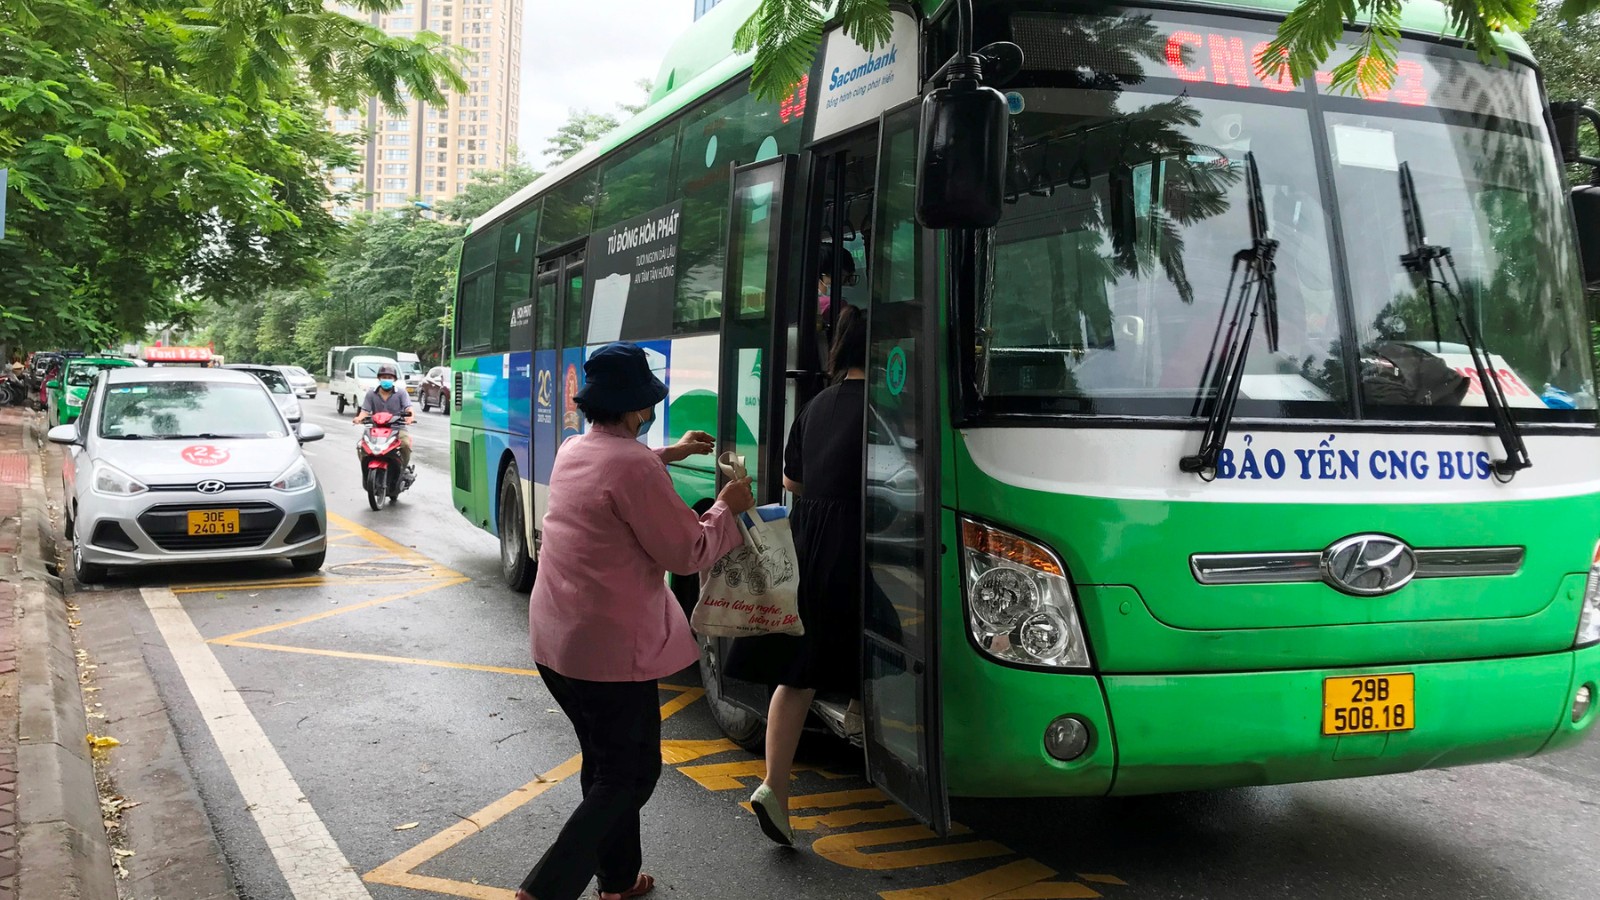 Bus - A Convenient Transportation 